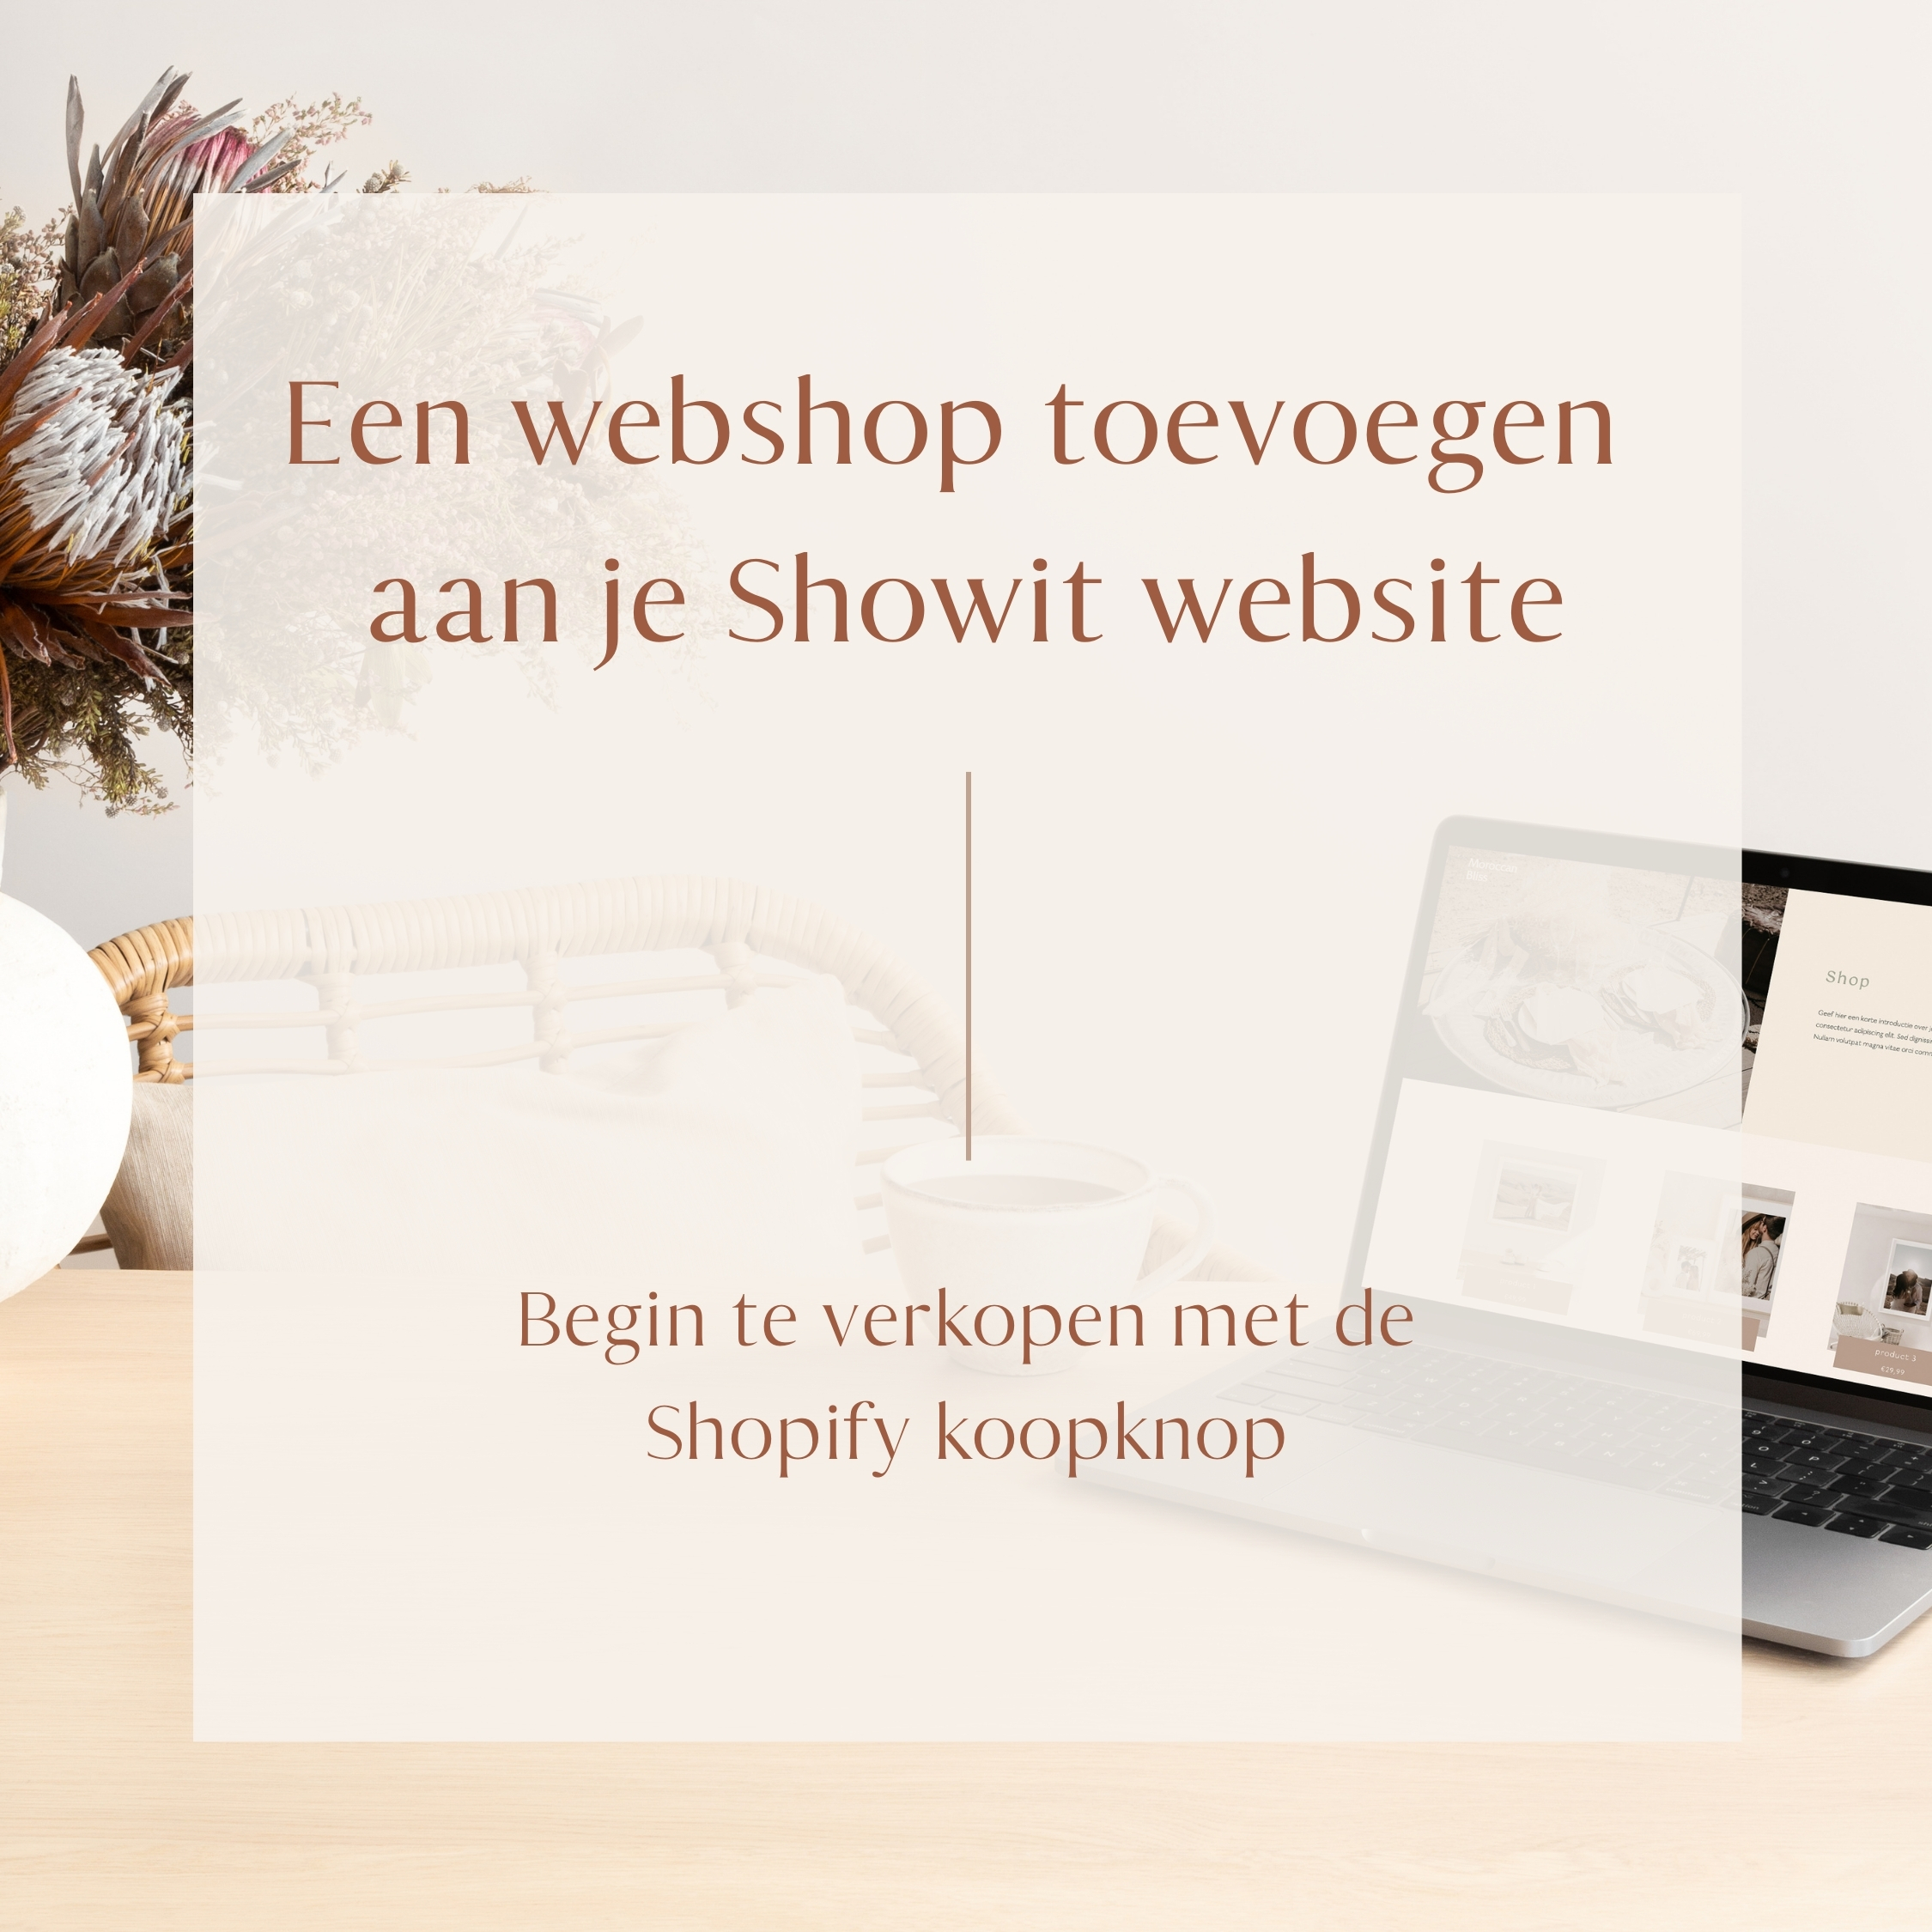 Webshop toevoegen aan Showit website